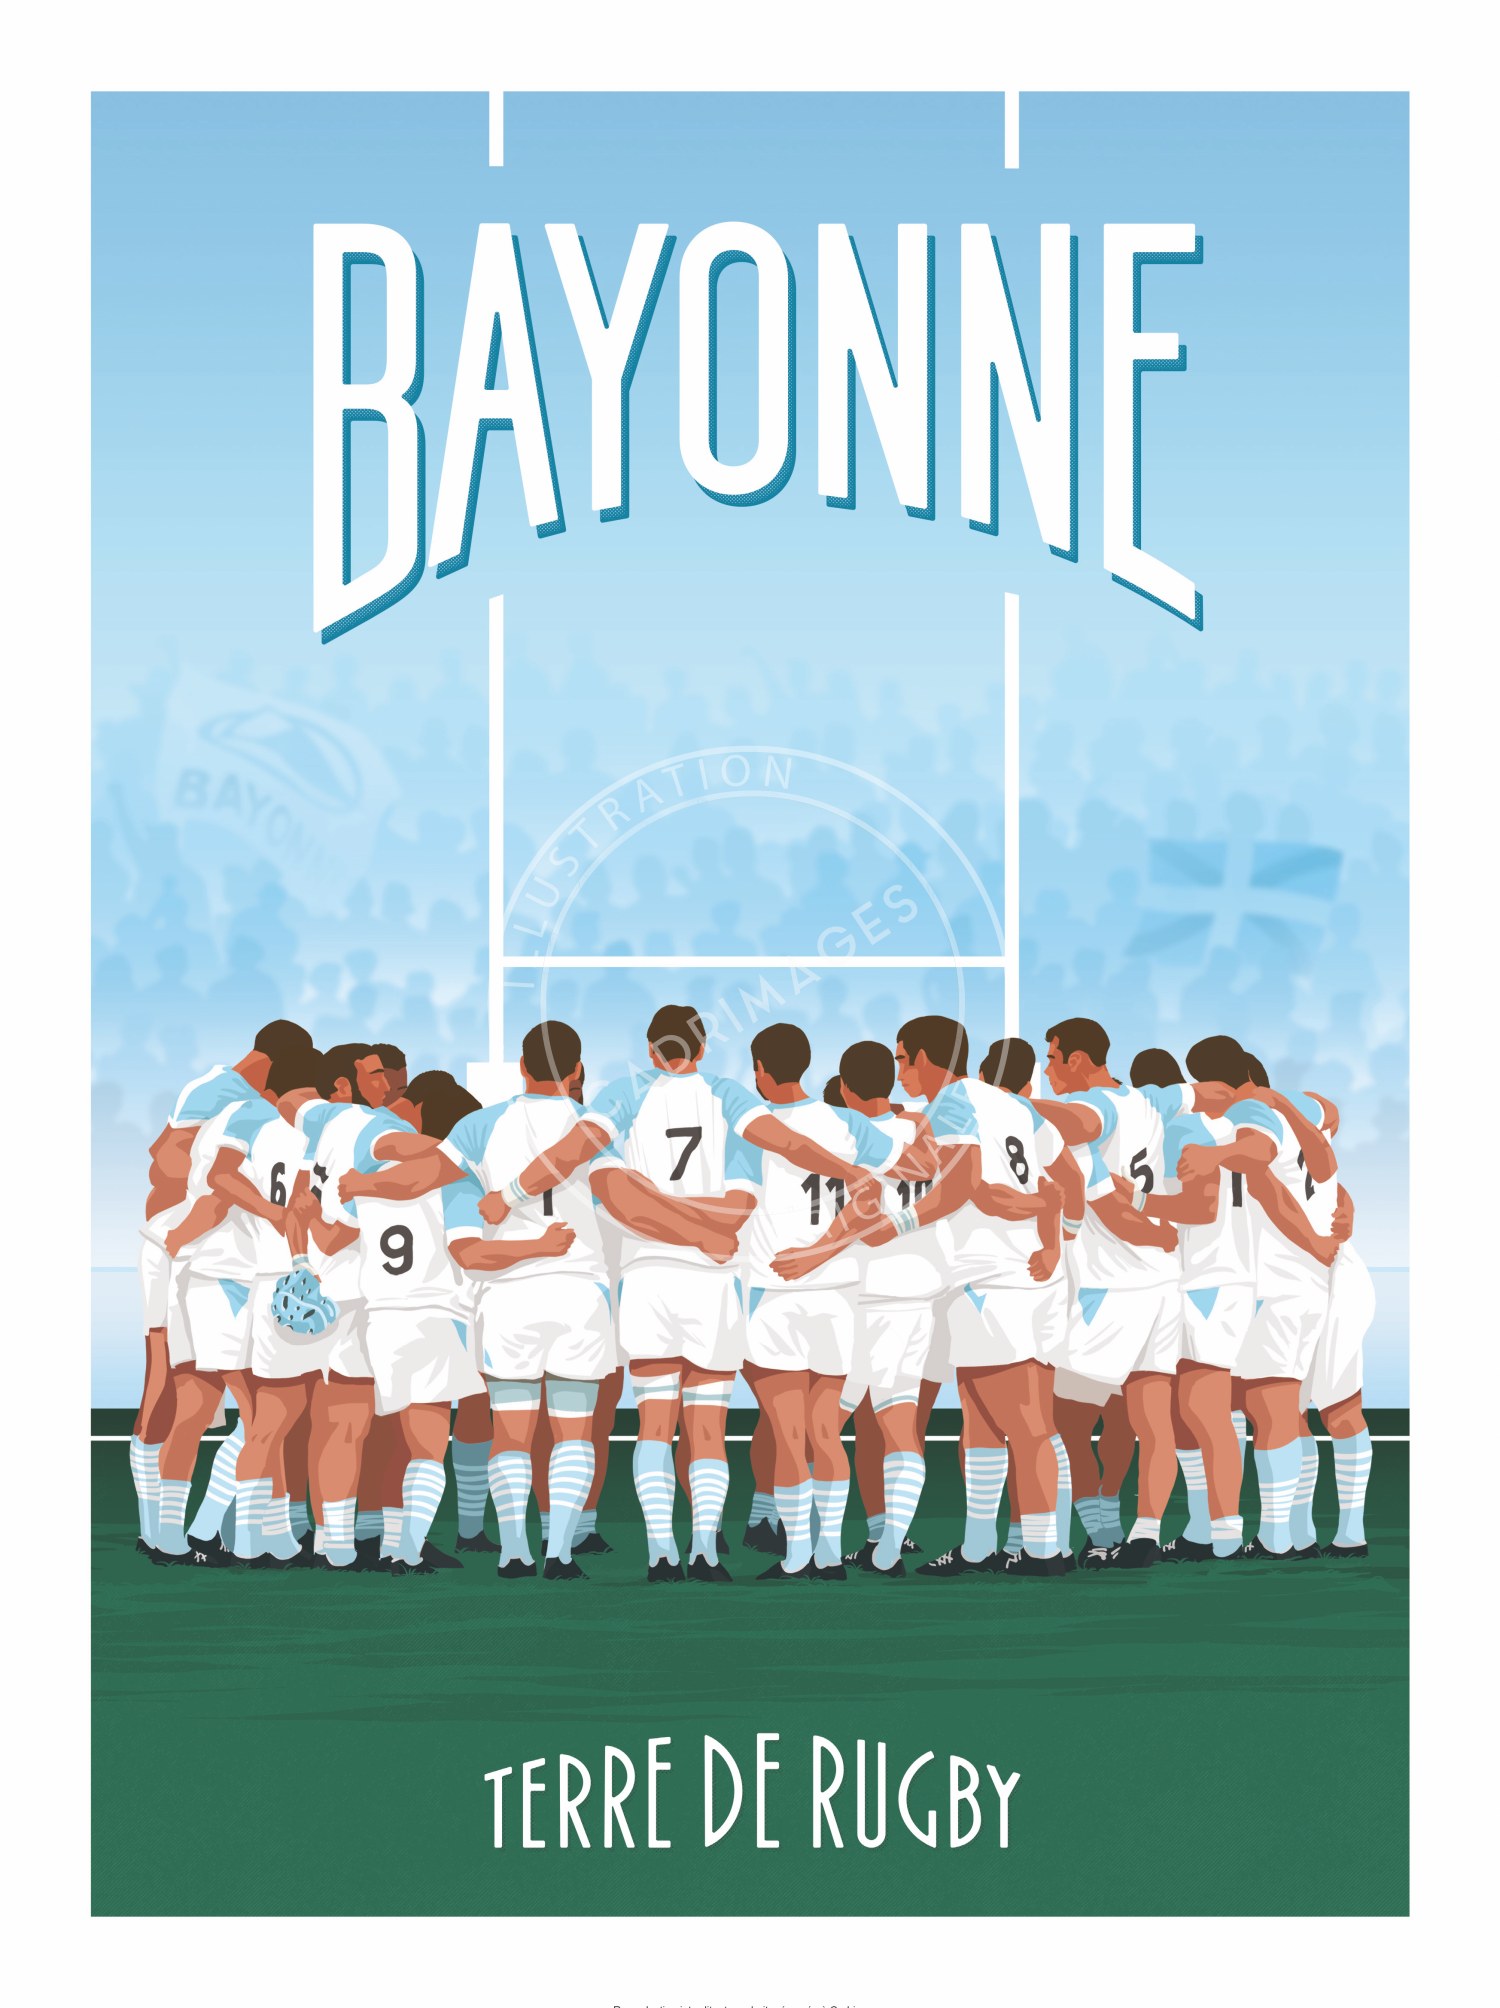 Affiche de rugby, Bayonne, La victoire